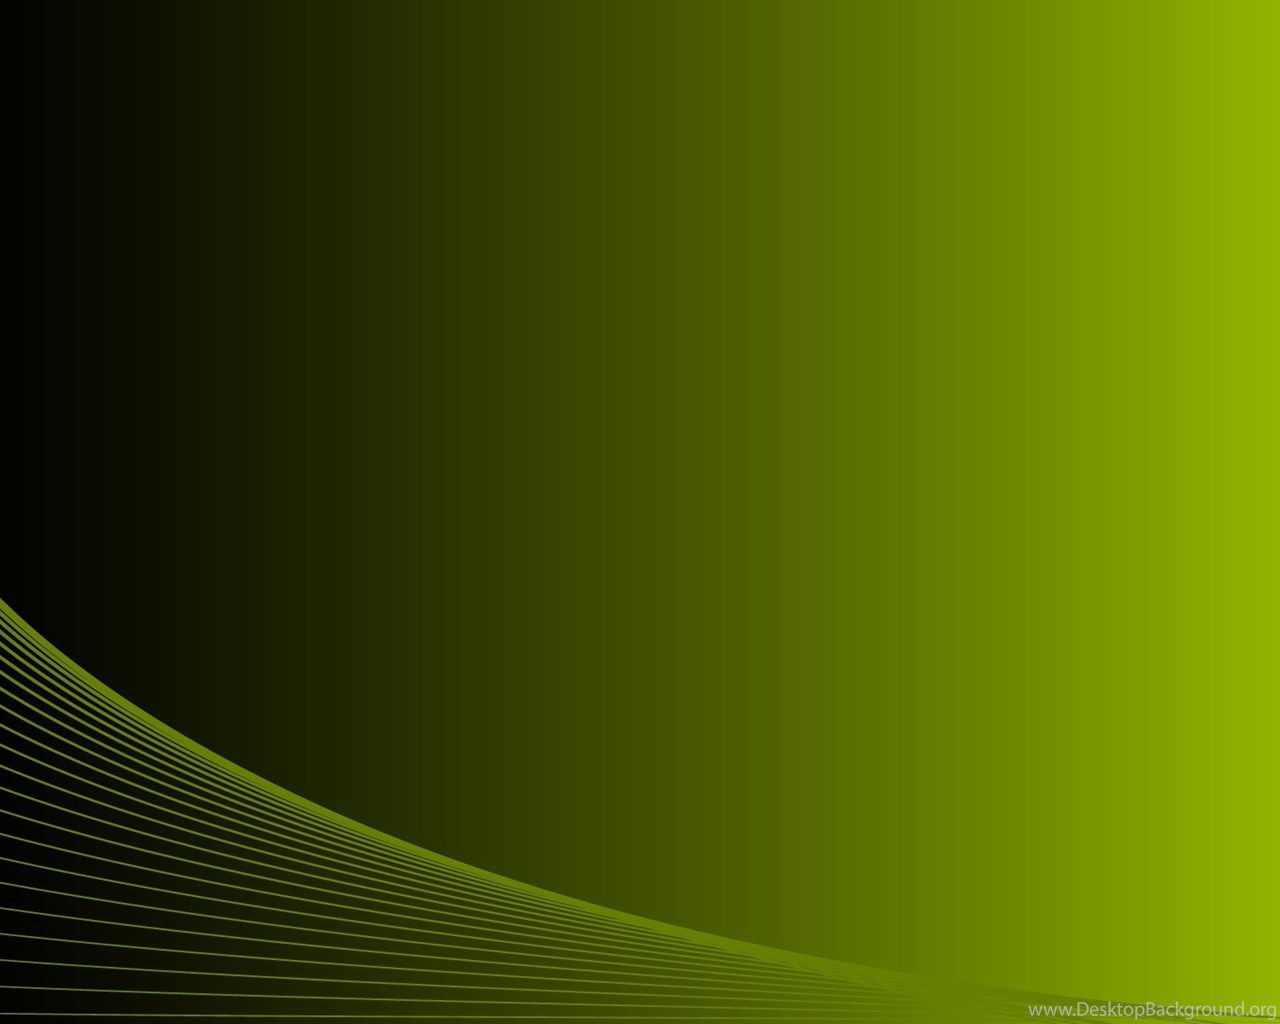 formal black green lines background presentation